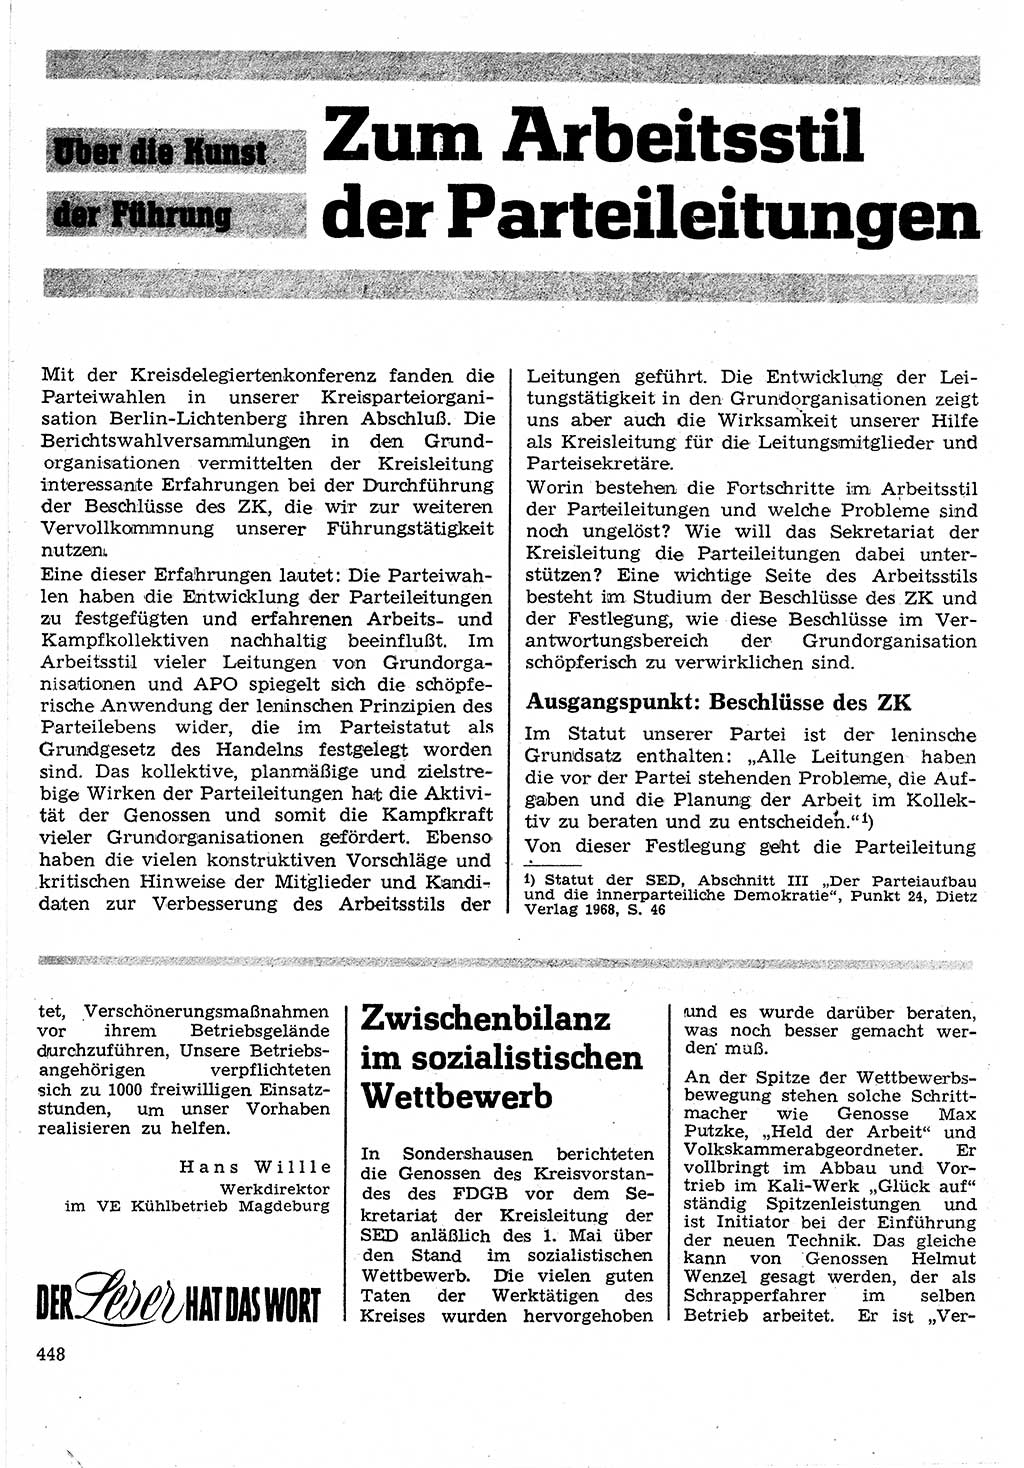 Neuer Weg (NW), Organ des Zentralkomitees (ZK) der SED (Sozialistische Einheitspartei Deutschlands) für Fragen des Parteilebens, 24. Jahrgang [Deutsche Demokratische Republik (DDR)] 1969, Seite 448 (NW ZK SED DDR 1969, S. 448)